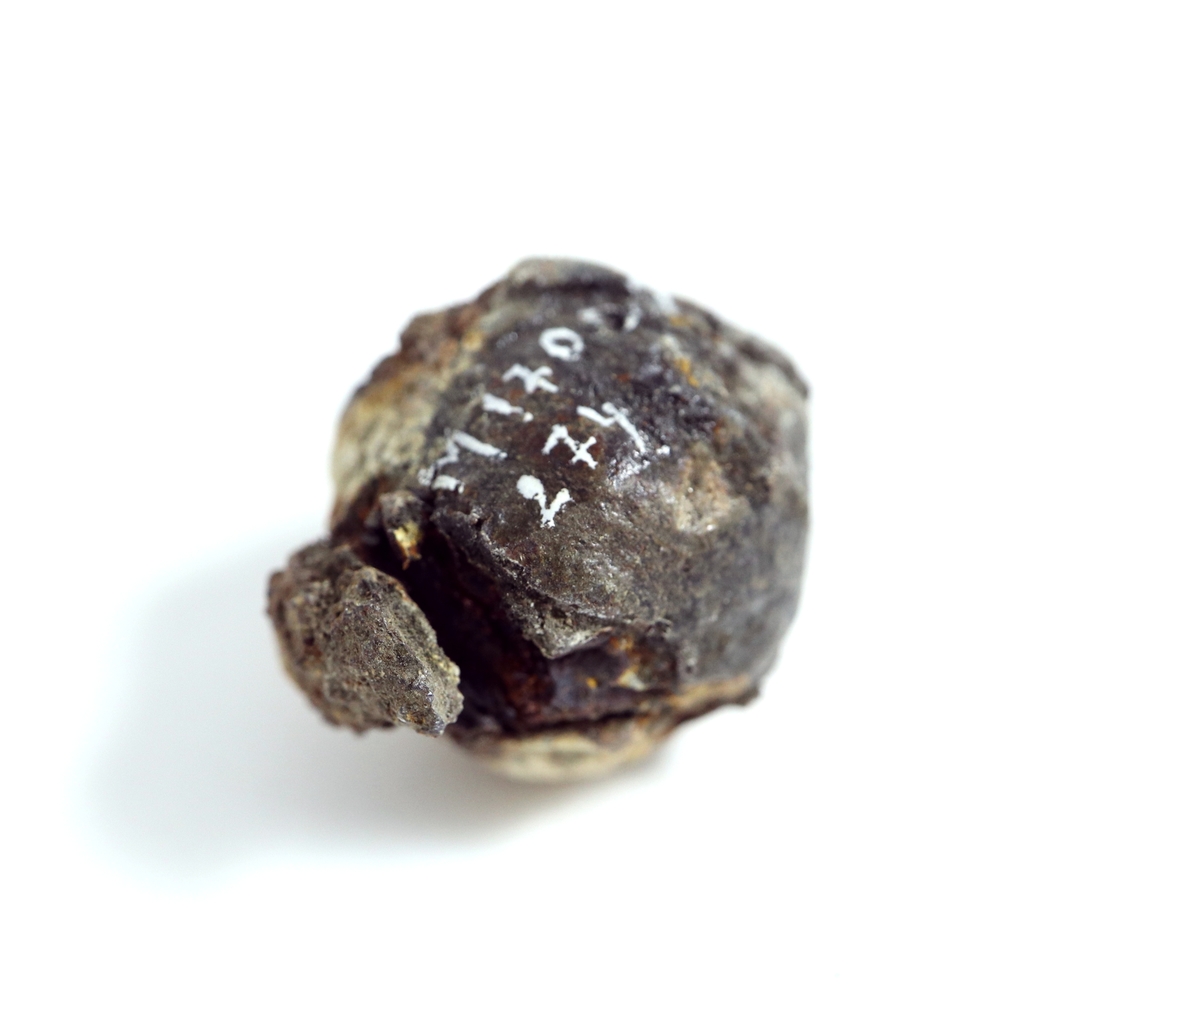 Omkring en kärna av järn är en dubbel blymantel gjuten. Gjutsömmen är delvis bevarad. Järnkärnan har på flera ställen trängt igenom blyytan och deformerat kulan.